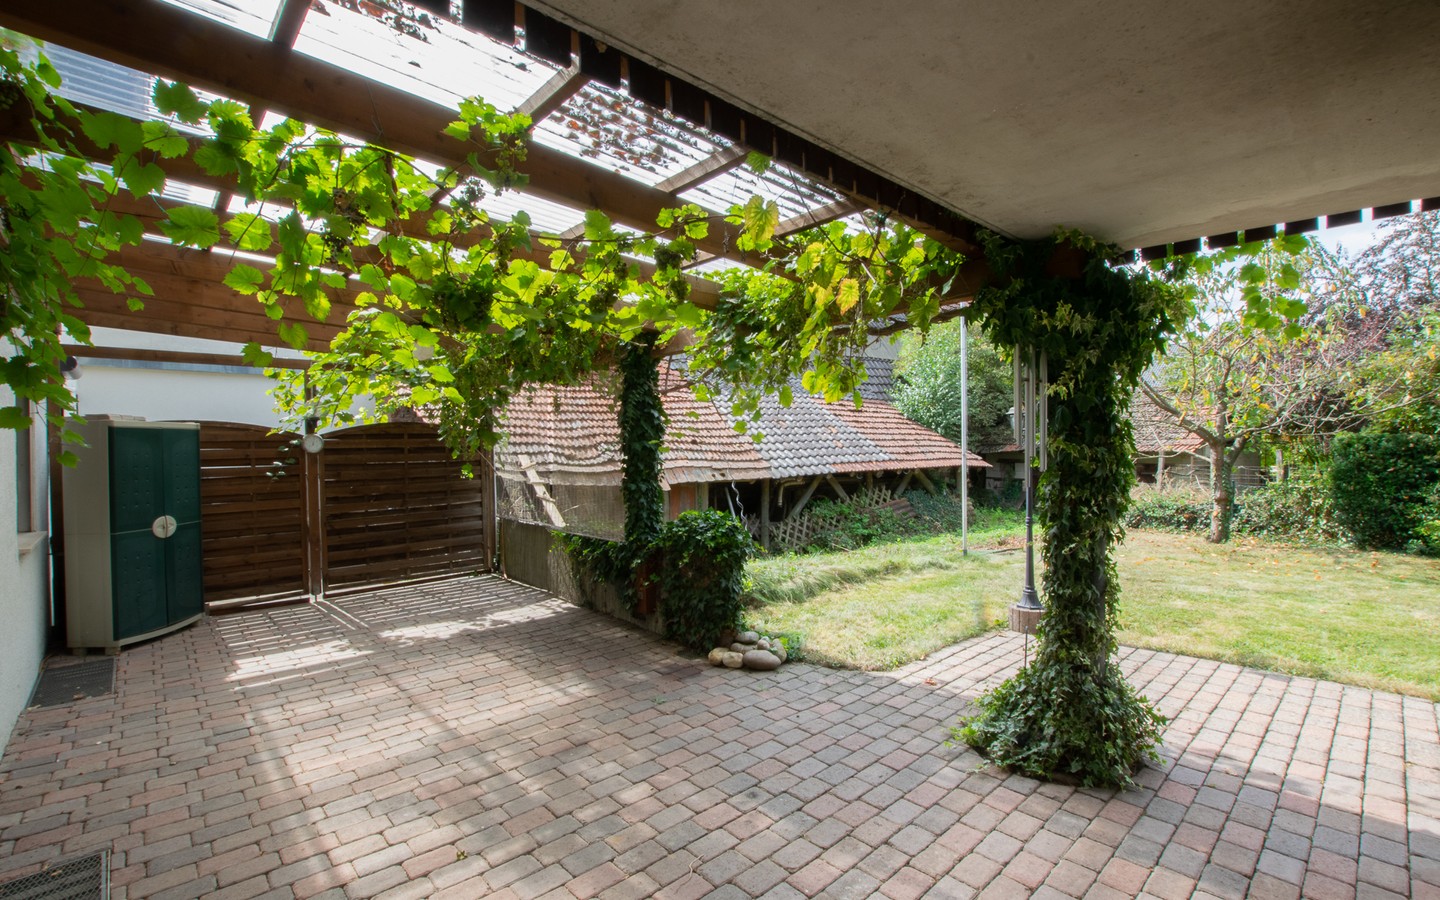 Terrasse - Platz für die ganze Familie! Großzügiges Wohnhaus mit Einliegerwohnung und idyllischem Garten